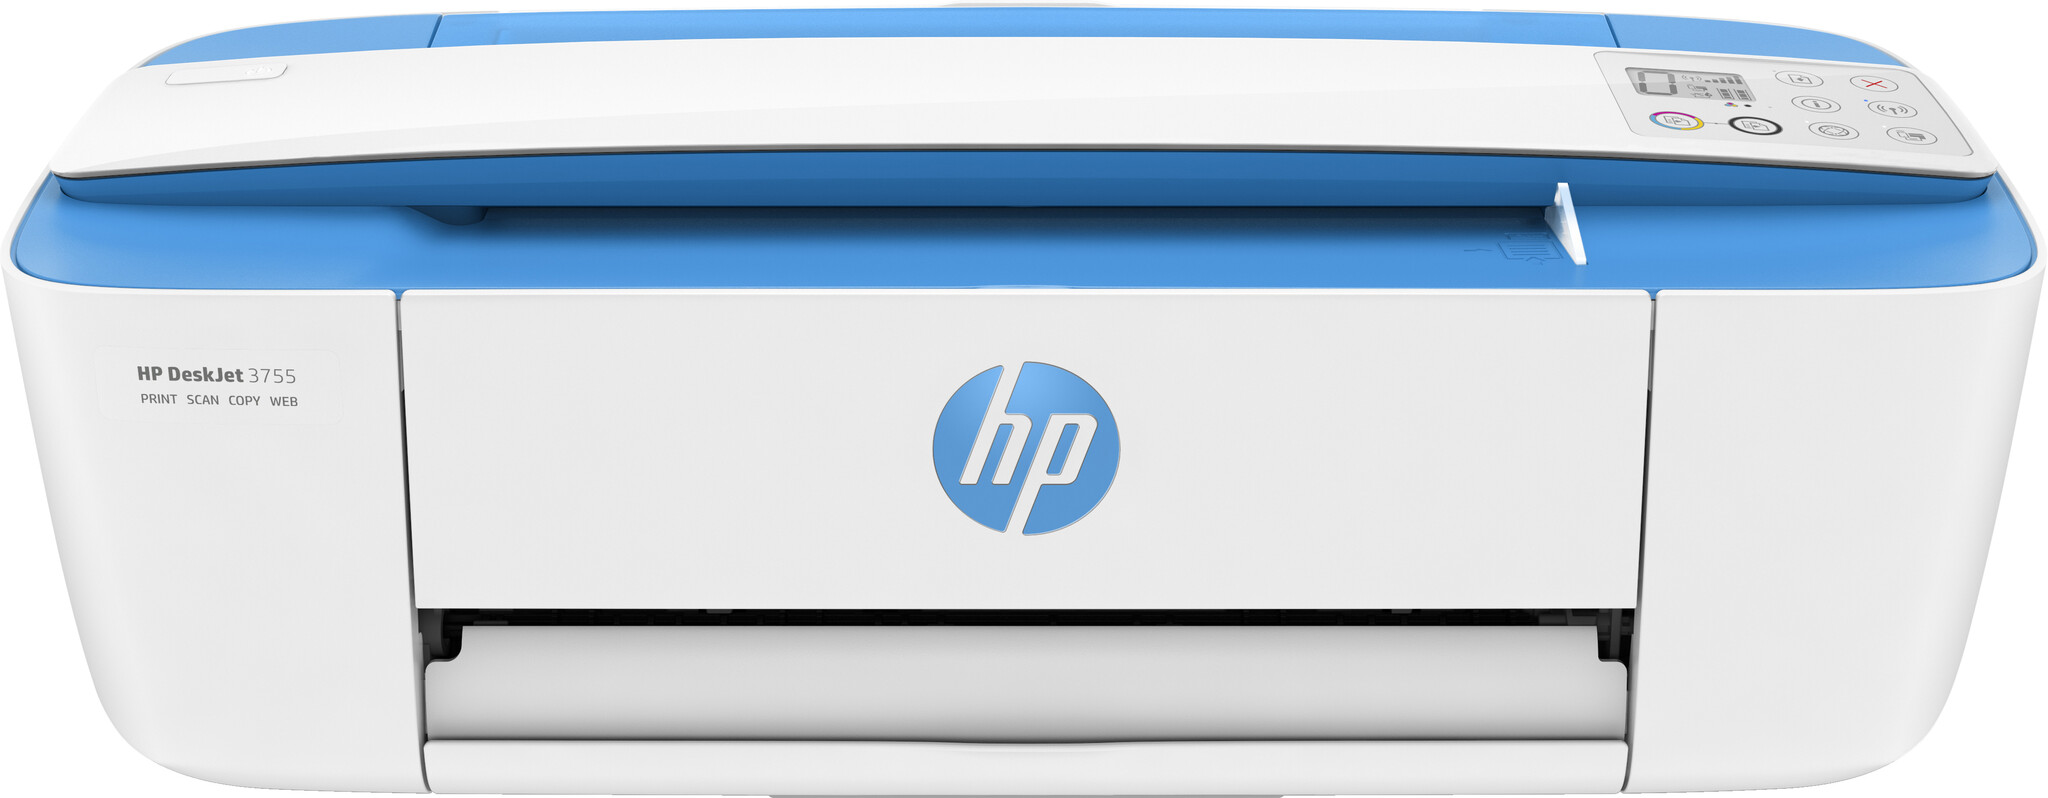 HP DeskJet 3760 Inkjet Printer – Blue / White (T8X19B#687) No ink #357250